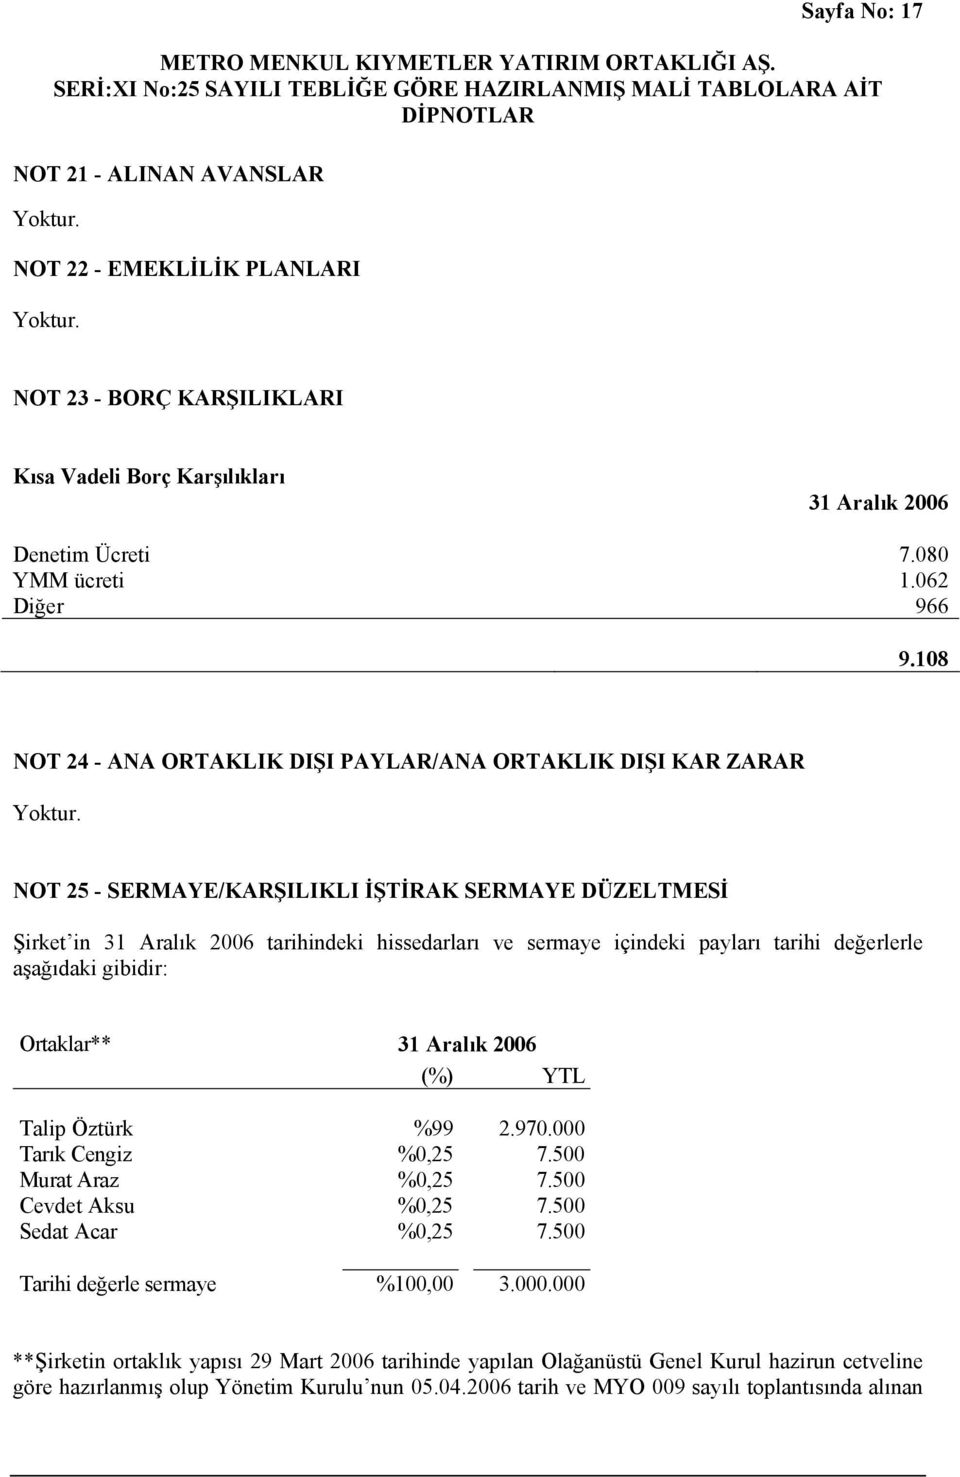 değerlerle aşağıdaki gibidir: Ortaklar** (%) YTL Talip Öztürk %99 2.970.000 Tarık Cengiz %0,25 7.500 Murat Araz %0,25 7.500 Cevdet Aksu %0,25 7.500 Sedat Acar %0,25 7.